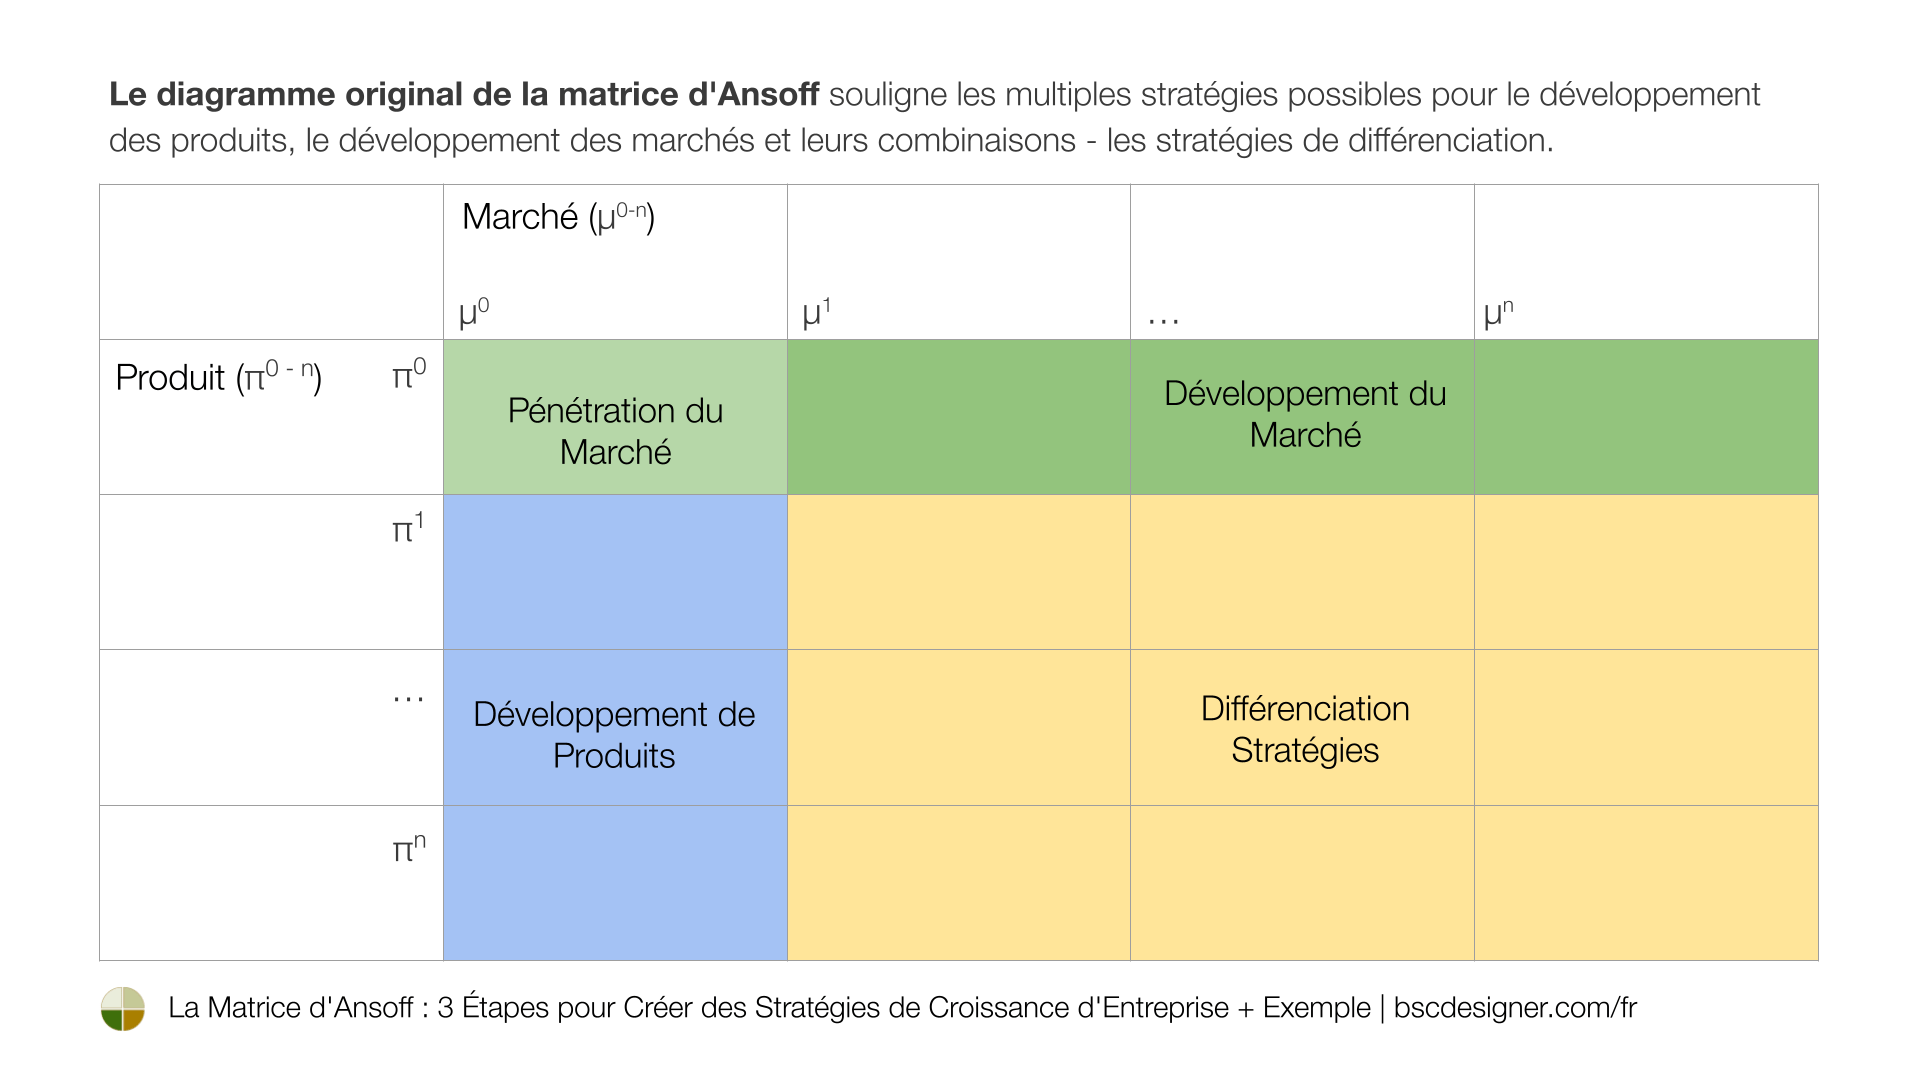 Le diagramme original de la matrice d'Ansoff souligne les multiples stratégies possibles pour le développement de produits, le développement de marchés et leurs combinaisons - les stratégies de différenciation.